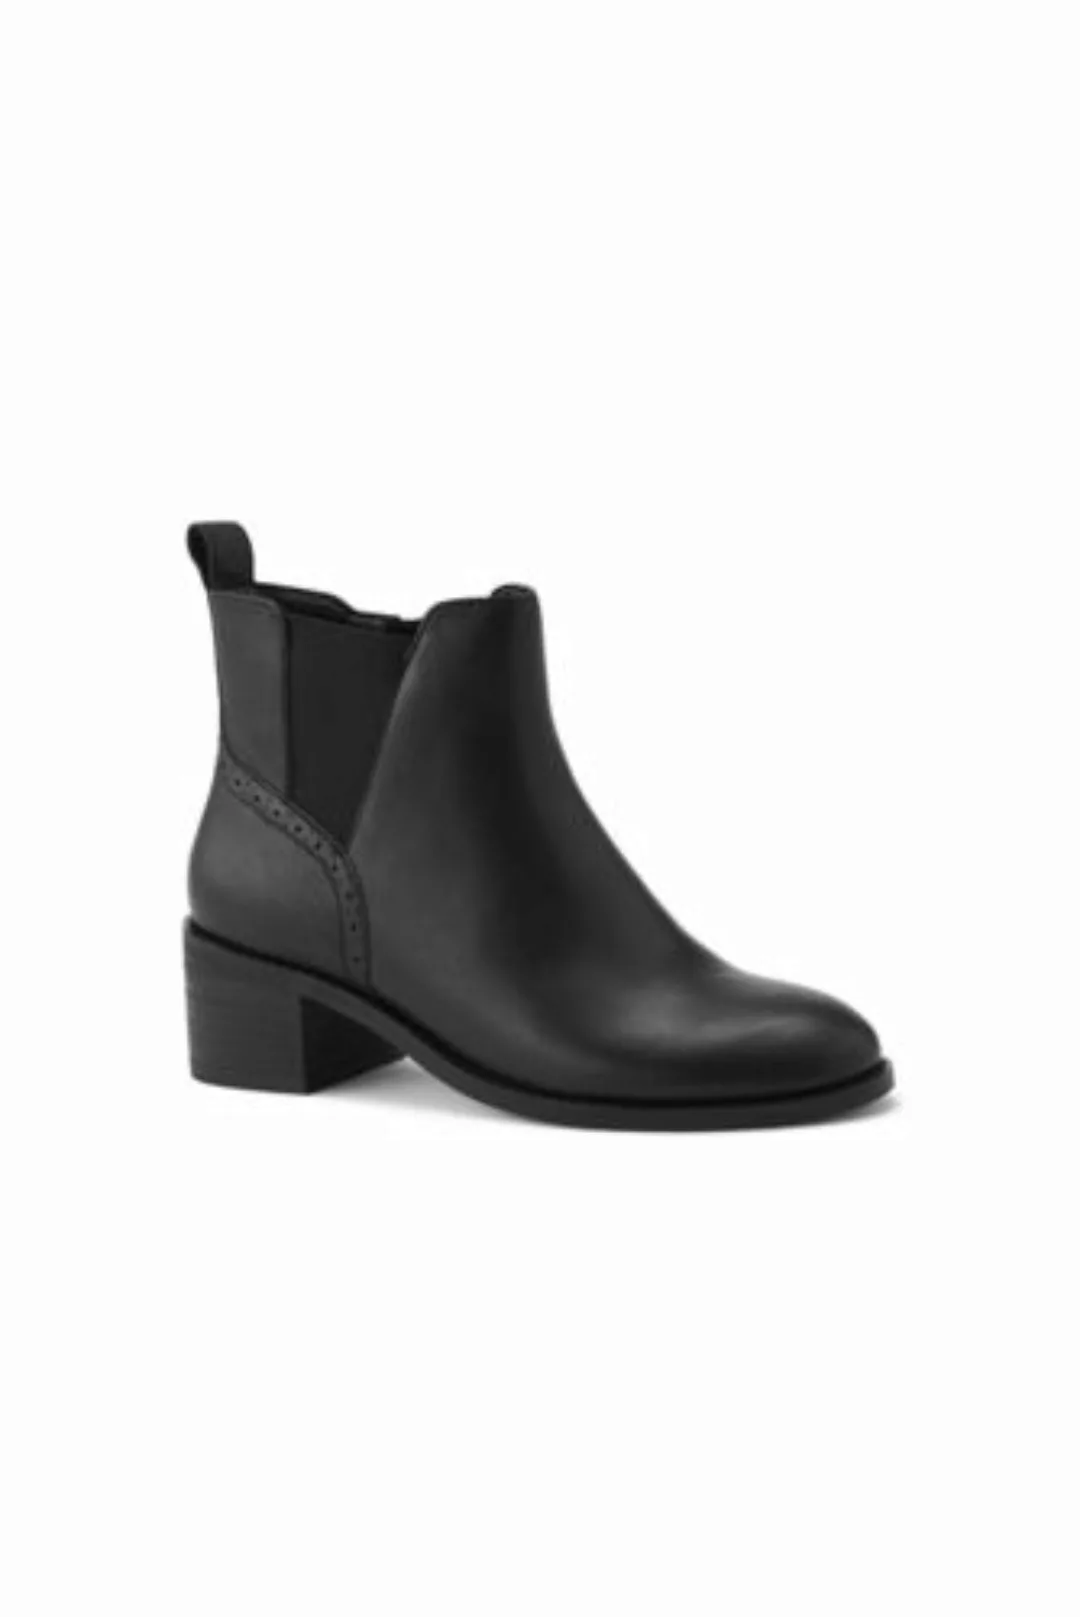 Chelsea-Boots mit Blockabsatz, Damen, Größe: 36 Normal, Schwarz, Leder, by günstig online kaufen